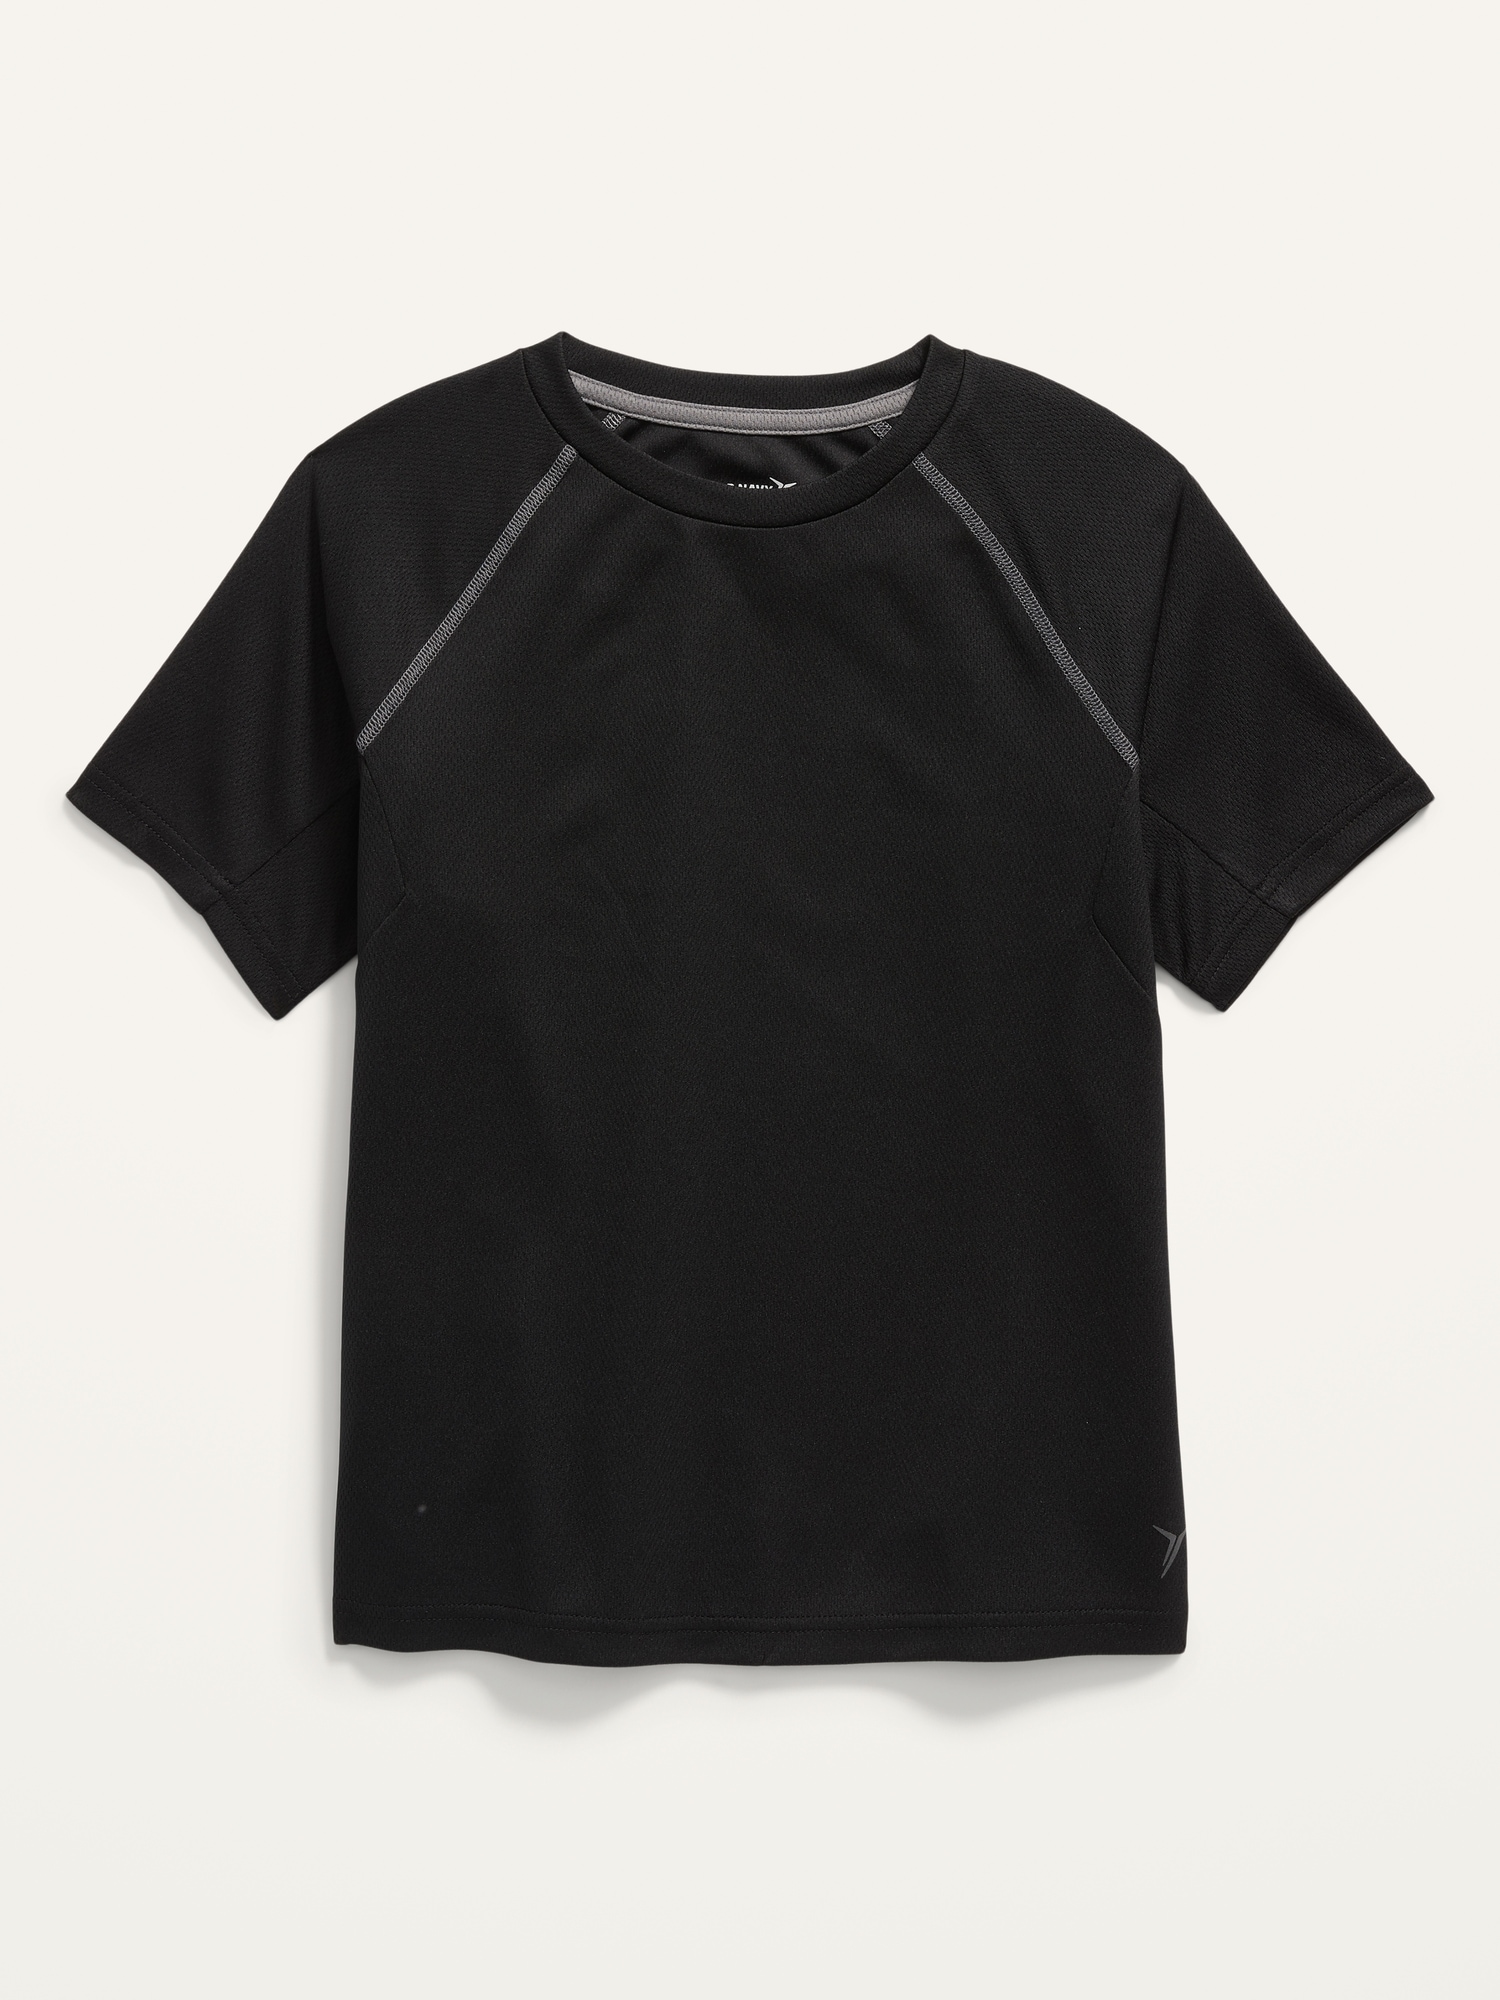 Go-Dry Short-Sleeve Mesh T-Shirt For Boys